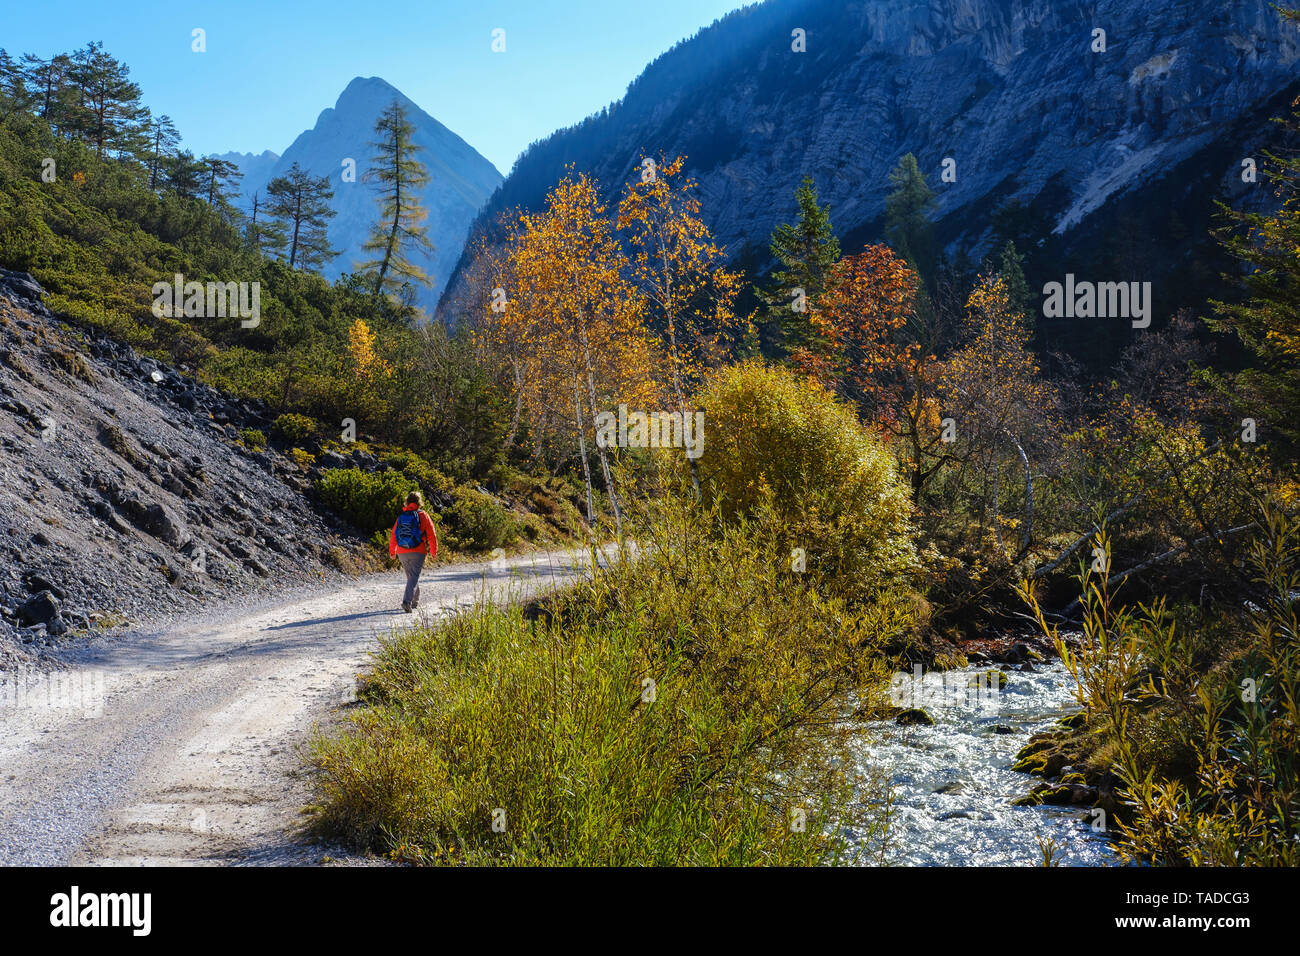 Autriche, Tyrol, Karwendel, Hinterautal, femme de la randonnée le long de rivière Isar Banque D'Images